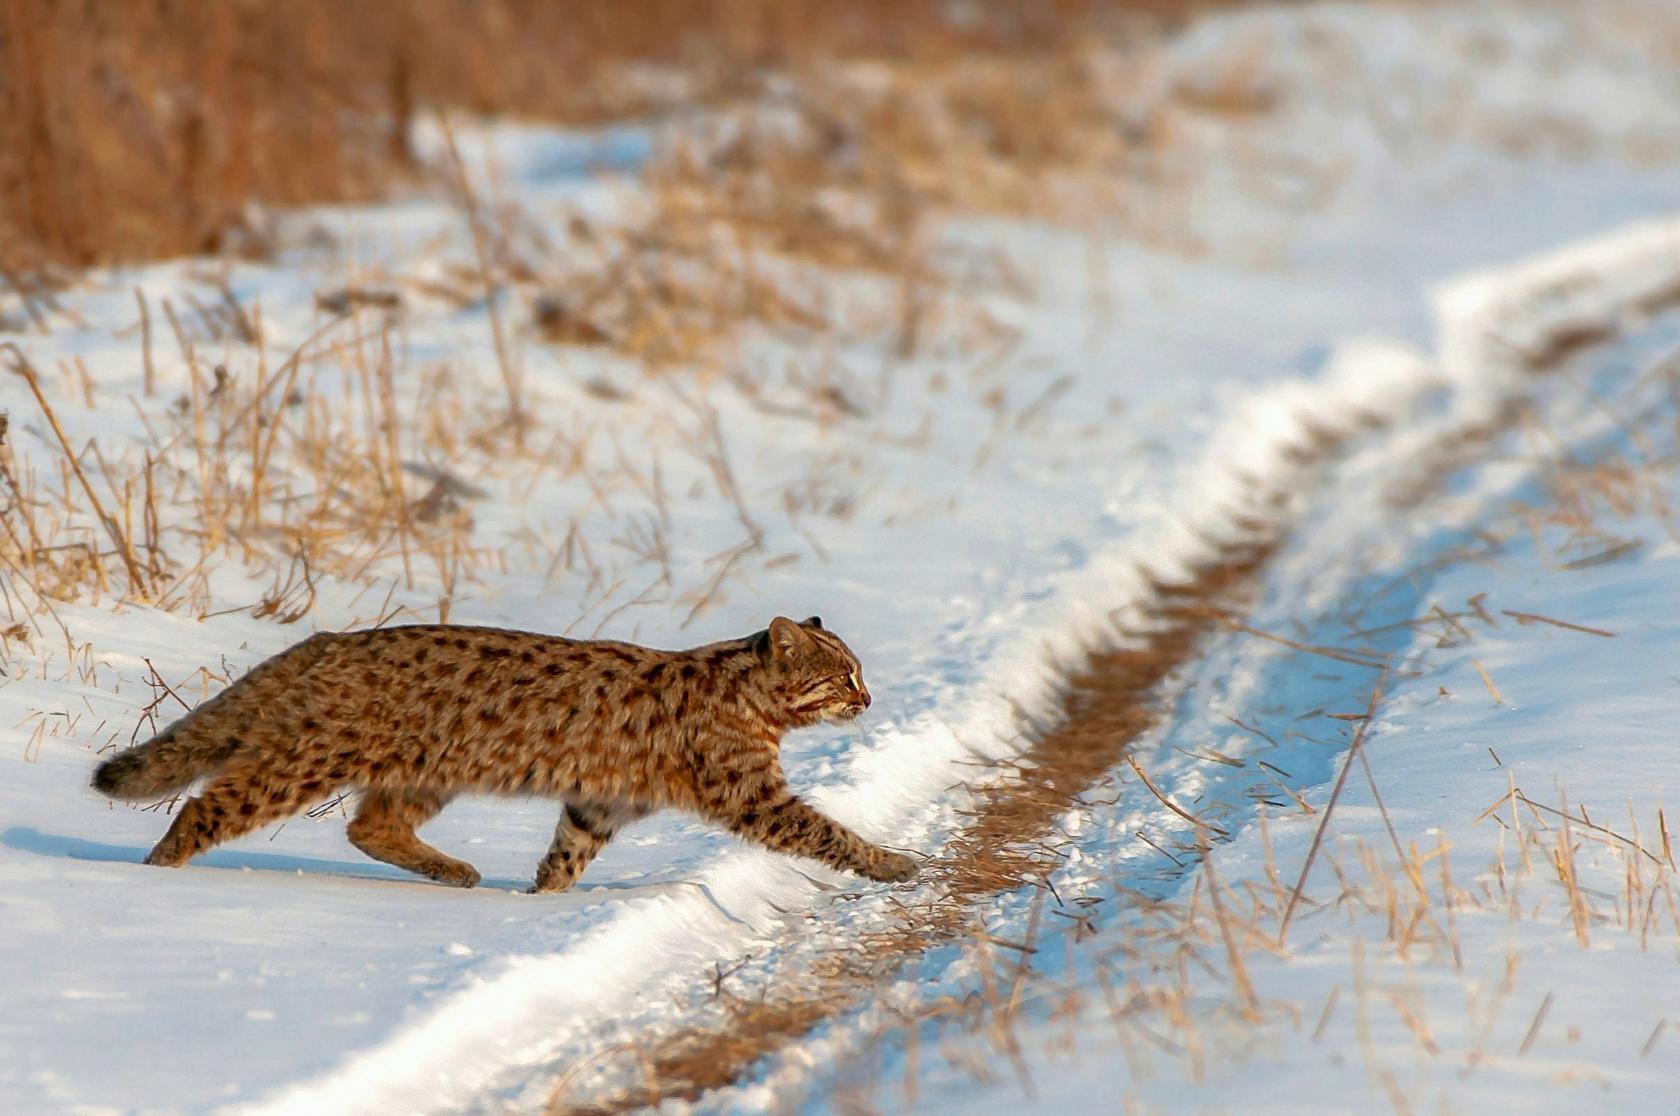 Амурский лесной кот (дальневосточная леопардовая кошка)